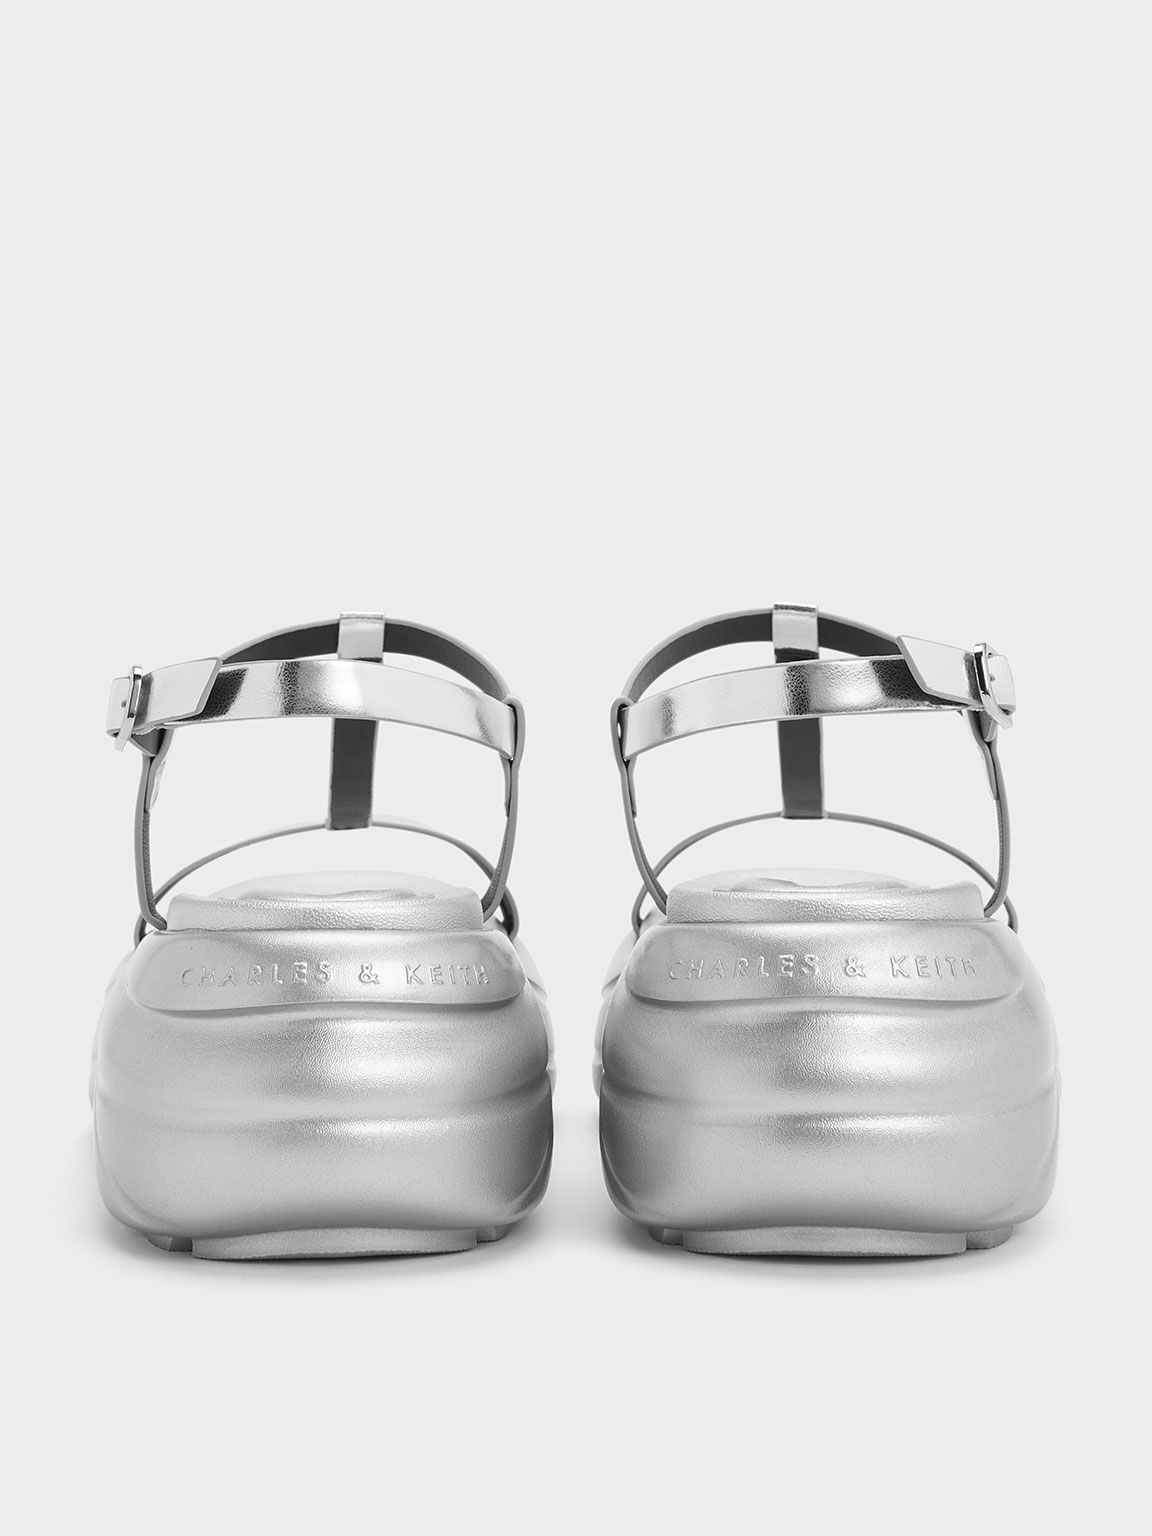 Sandalias deportivas metalizadas de plataforma curvada con tira en T, Plateado, hi-res